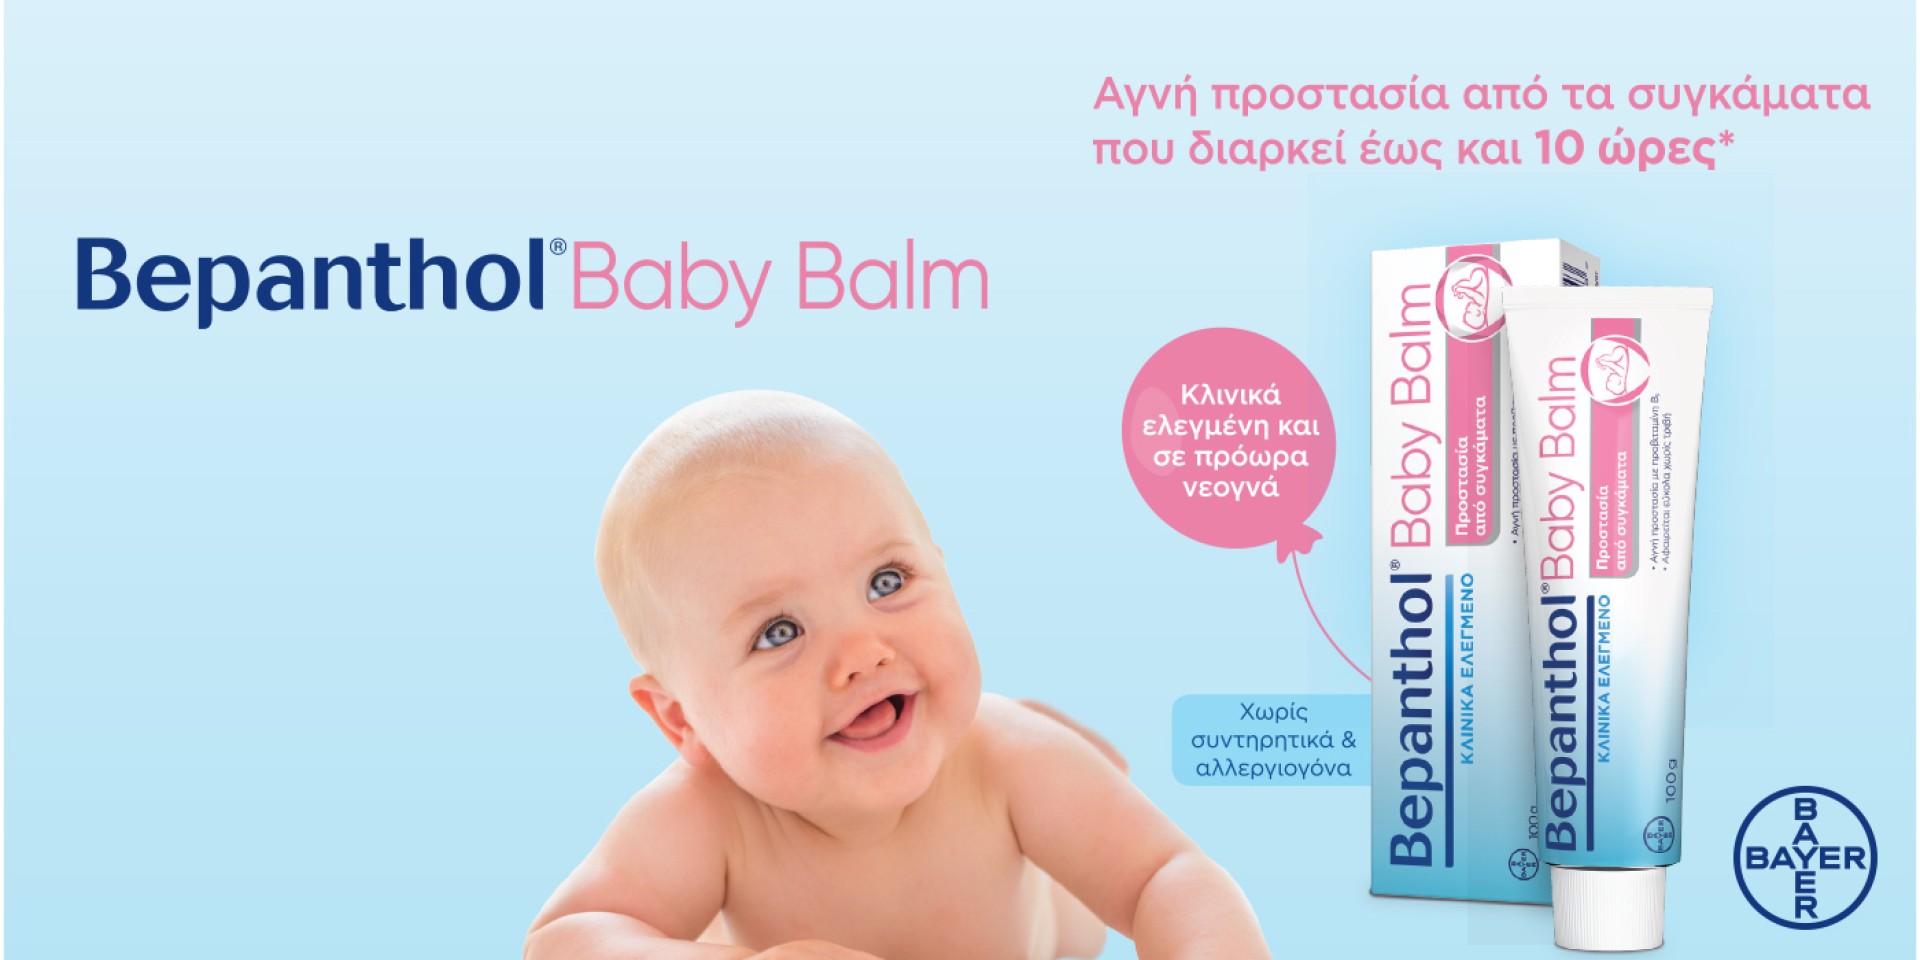 Απαλή φροντίδα Bepanthol Baby Balm για το μωράκι σας, κάθε μέρα.